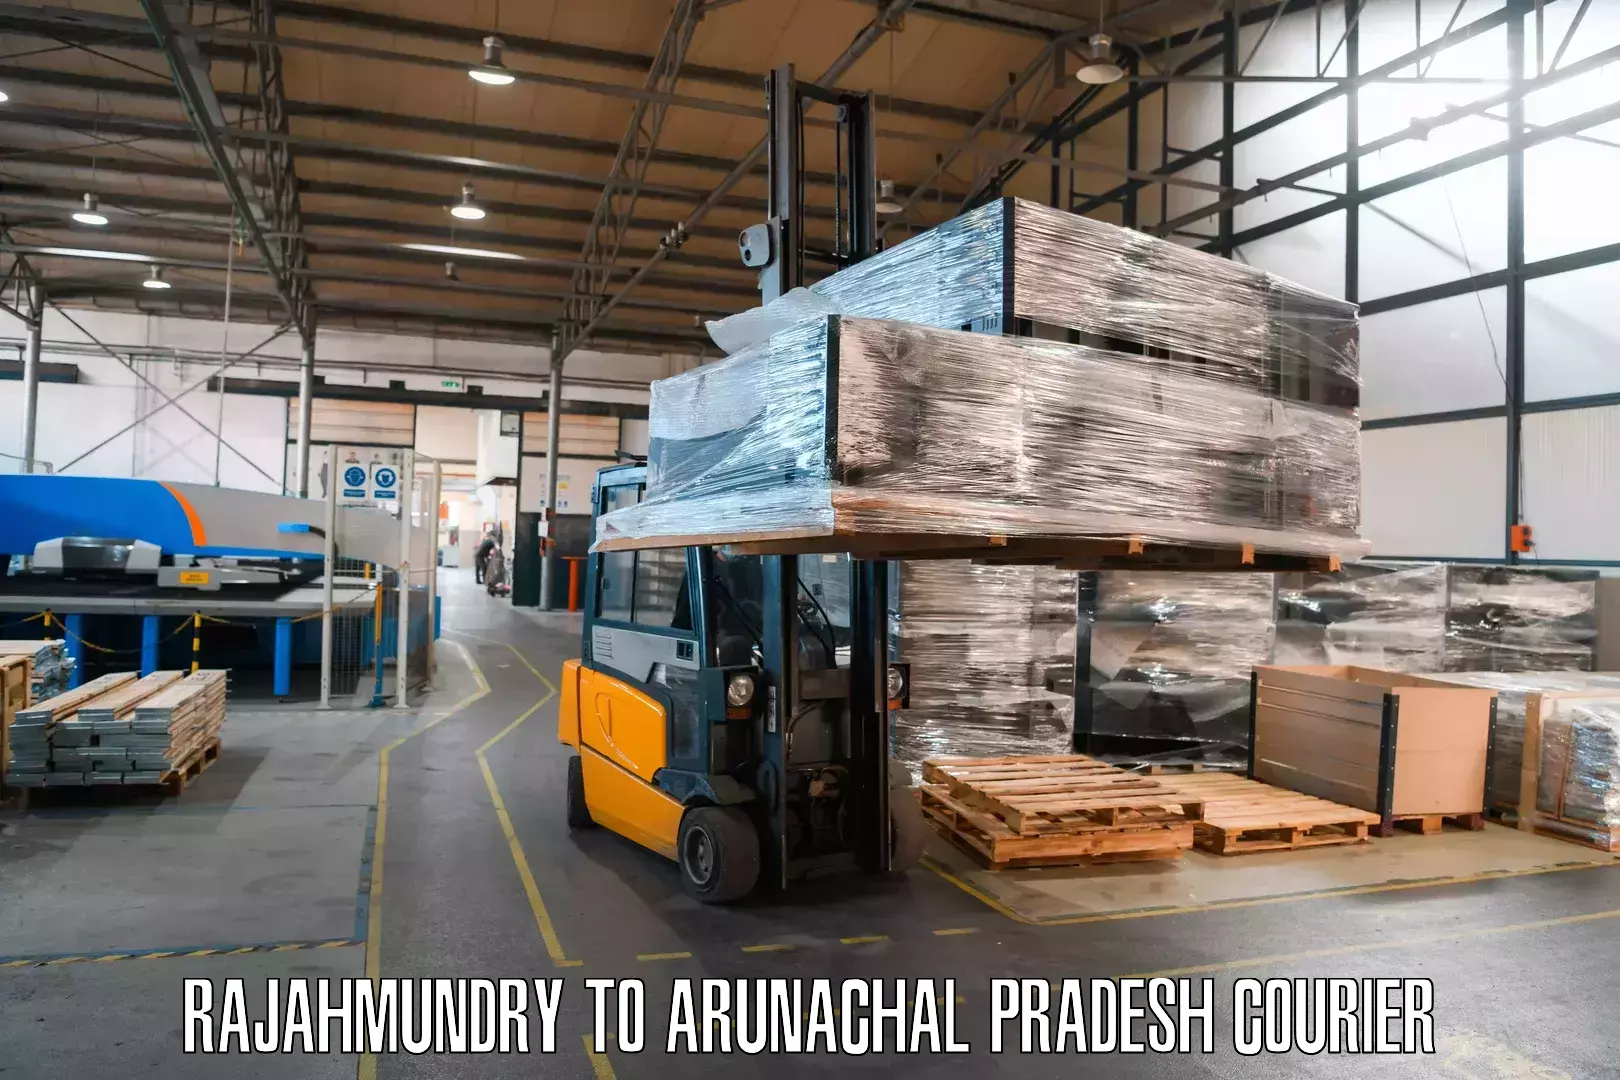 Package delivery network Rajahmundry to Arunachal Pradesh